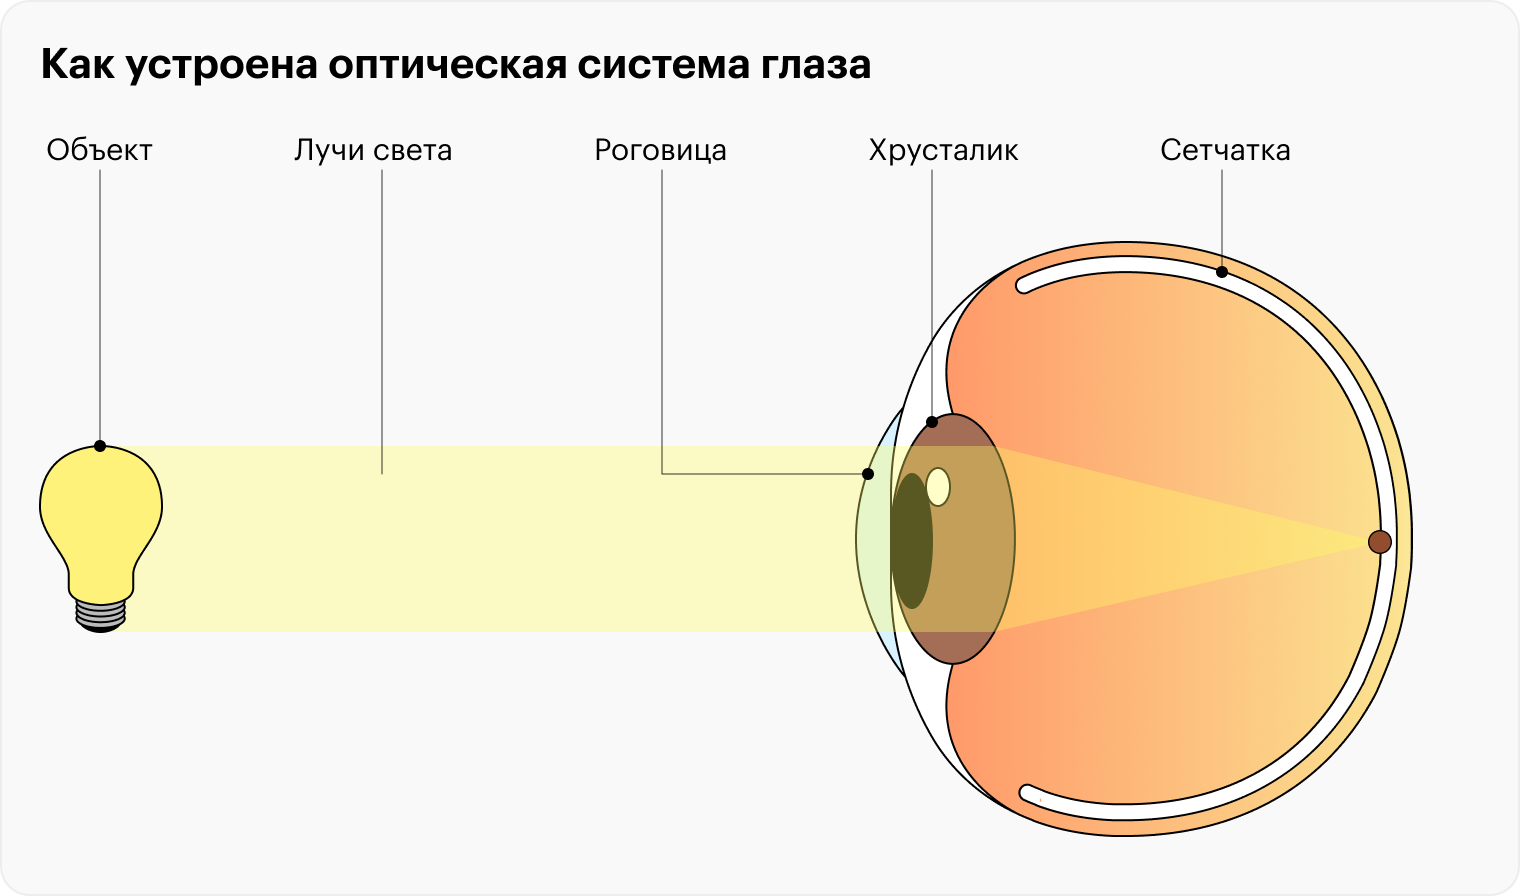 Так глаз получает информацию, превращает ее в нервные импульсы и отправляет в мозг